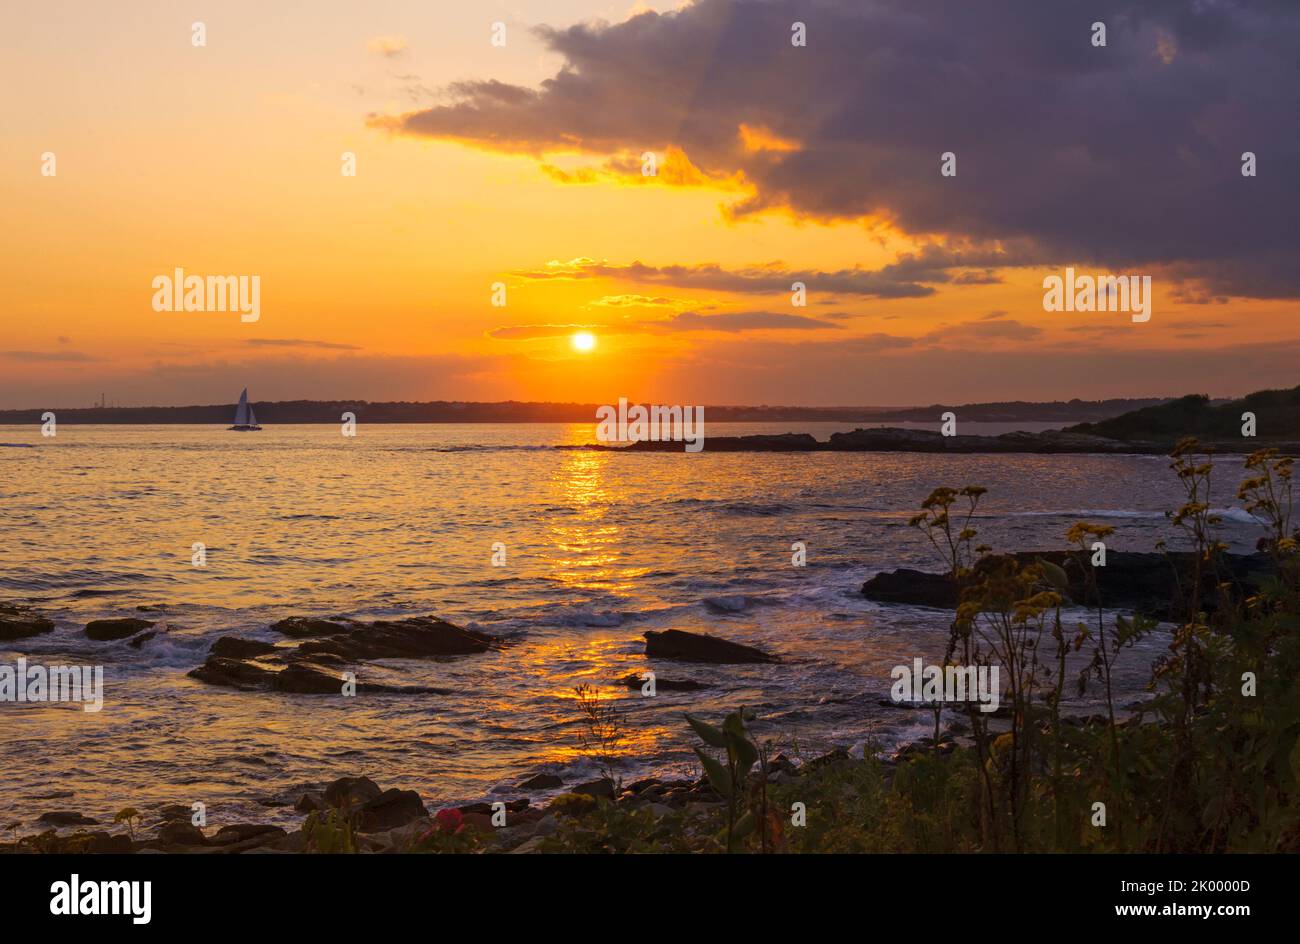 Seascape mit Gold und lila Sonnenuntergang, Segelboot, und Sonnenstrahlen in einem dramatischen Himmel, Newport, Rhode Island, Reise szenische Herbst Reise Kurzurlaub Landschaft. Stockfoto